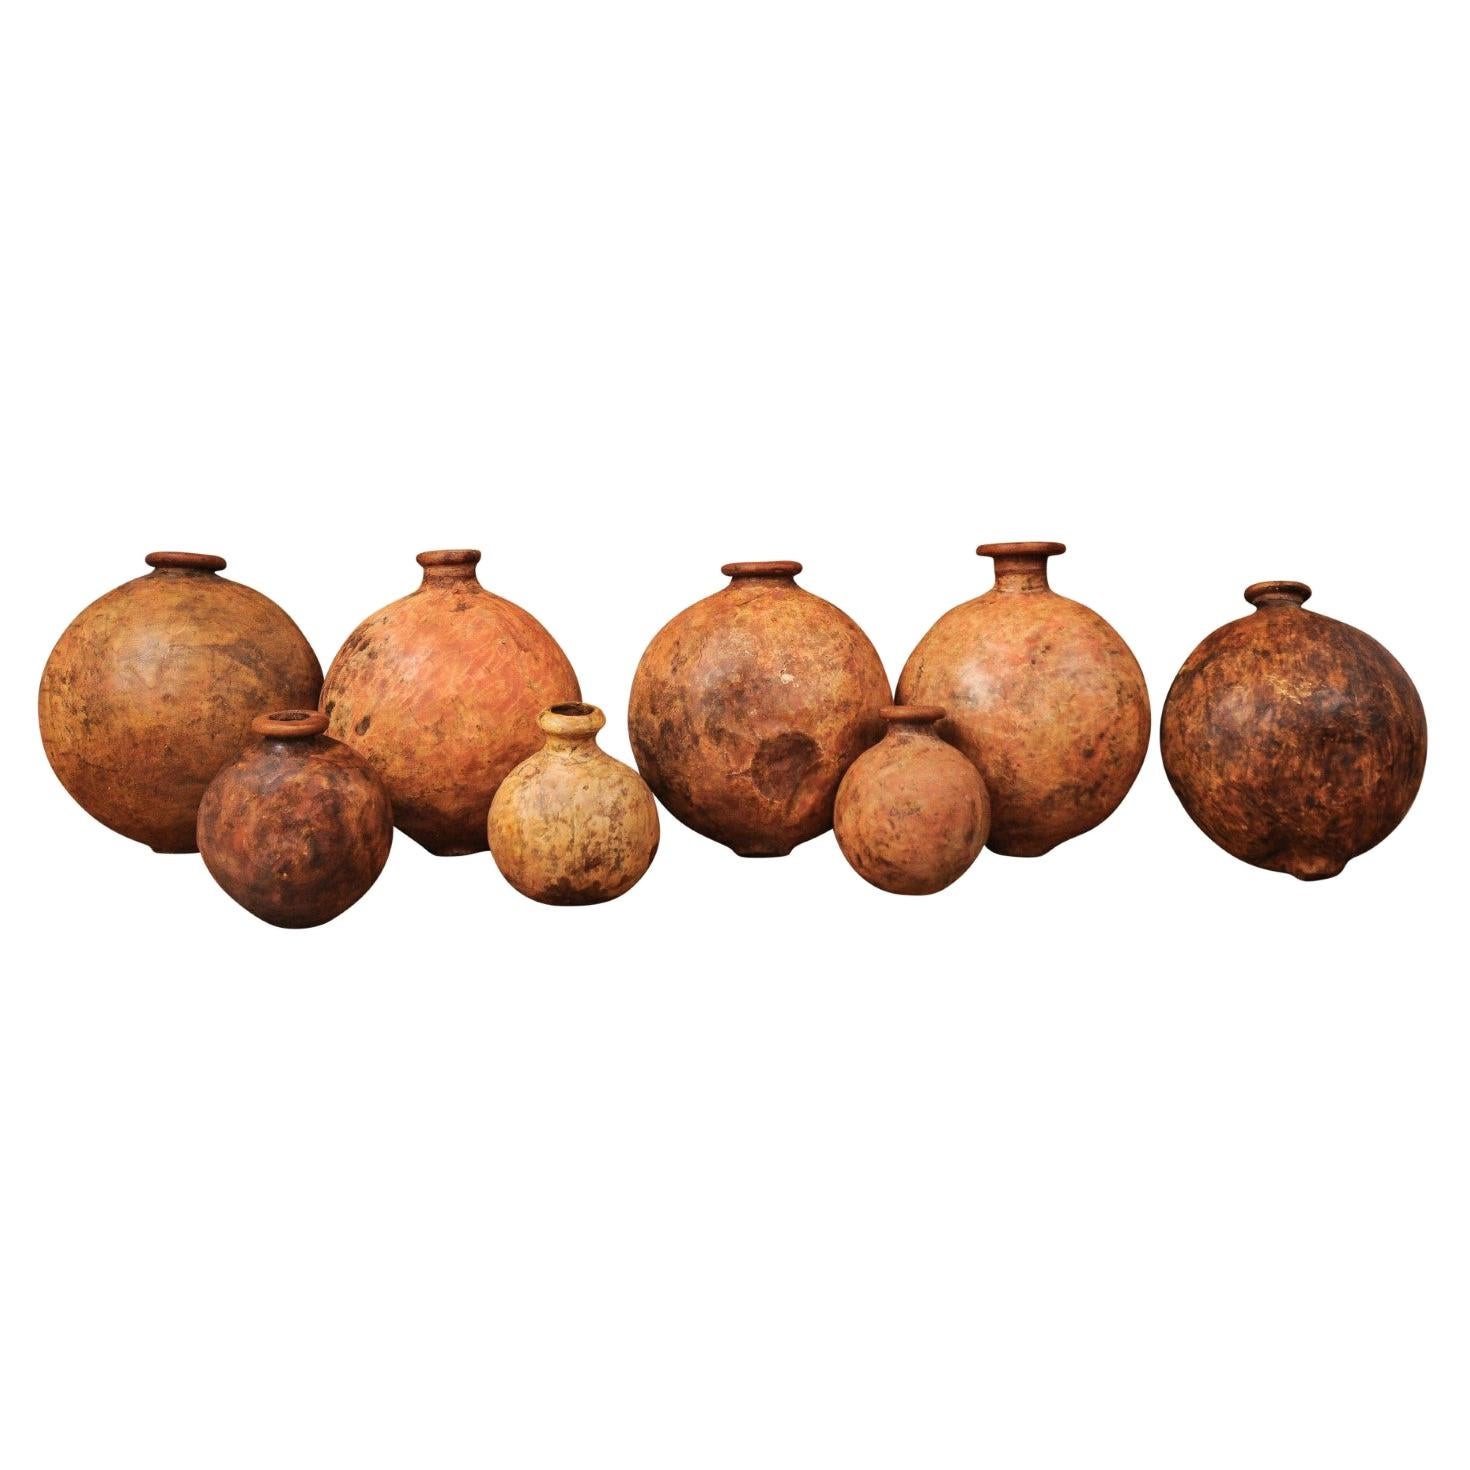 Pichets à huile espagnols rustiques des années 1830 pour vin ou olives avec patine vieillie, vendus chacun